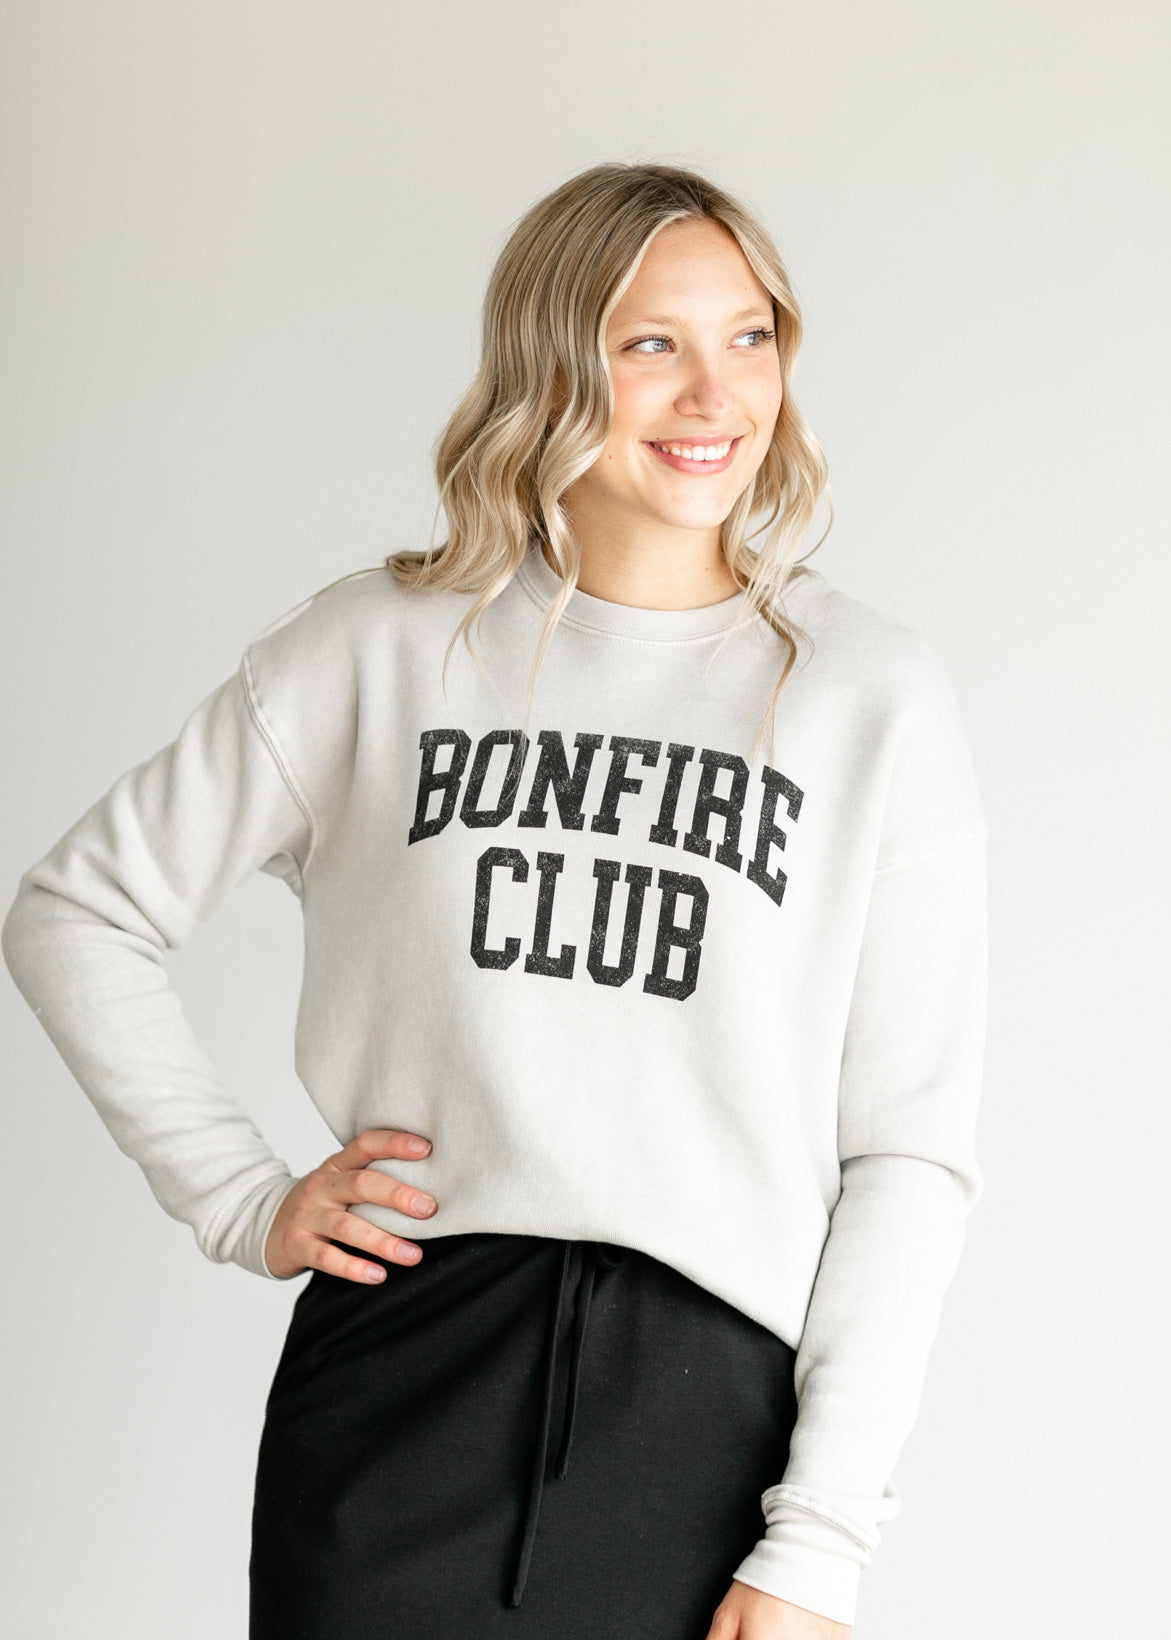 Bonfire Club Crewneck Sweatshirt Tops